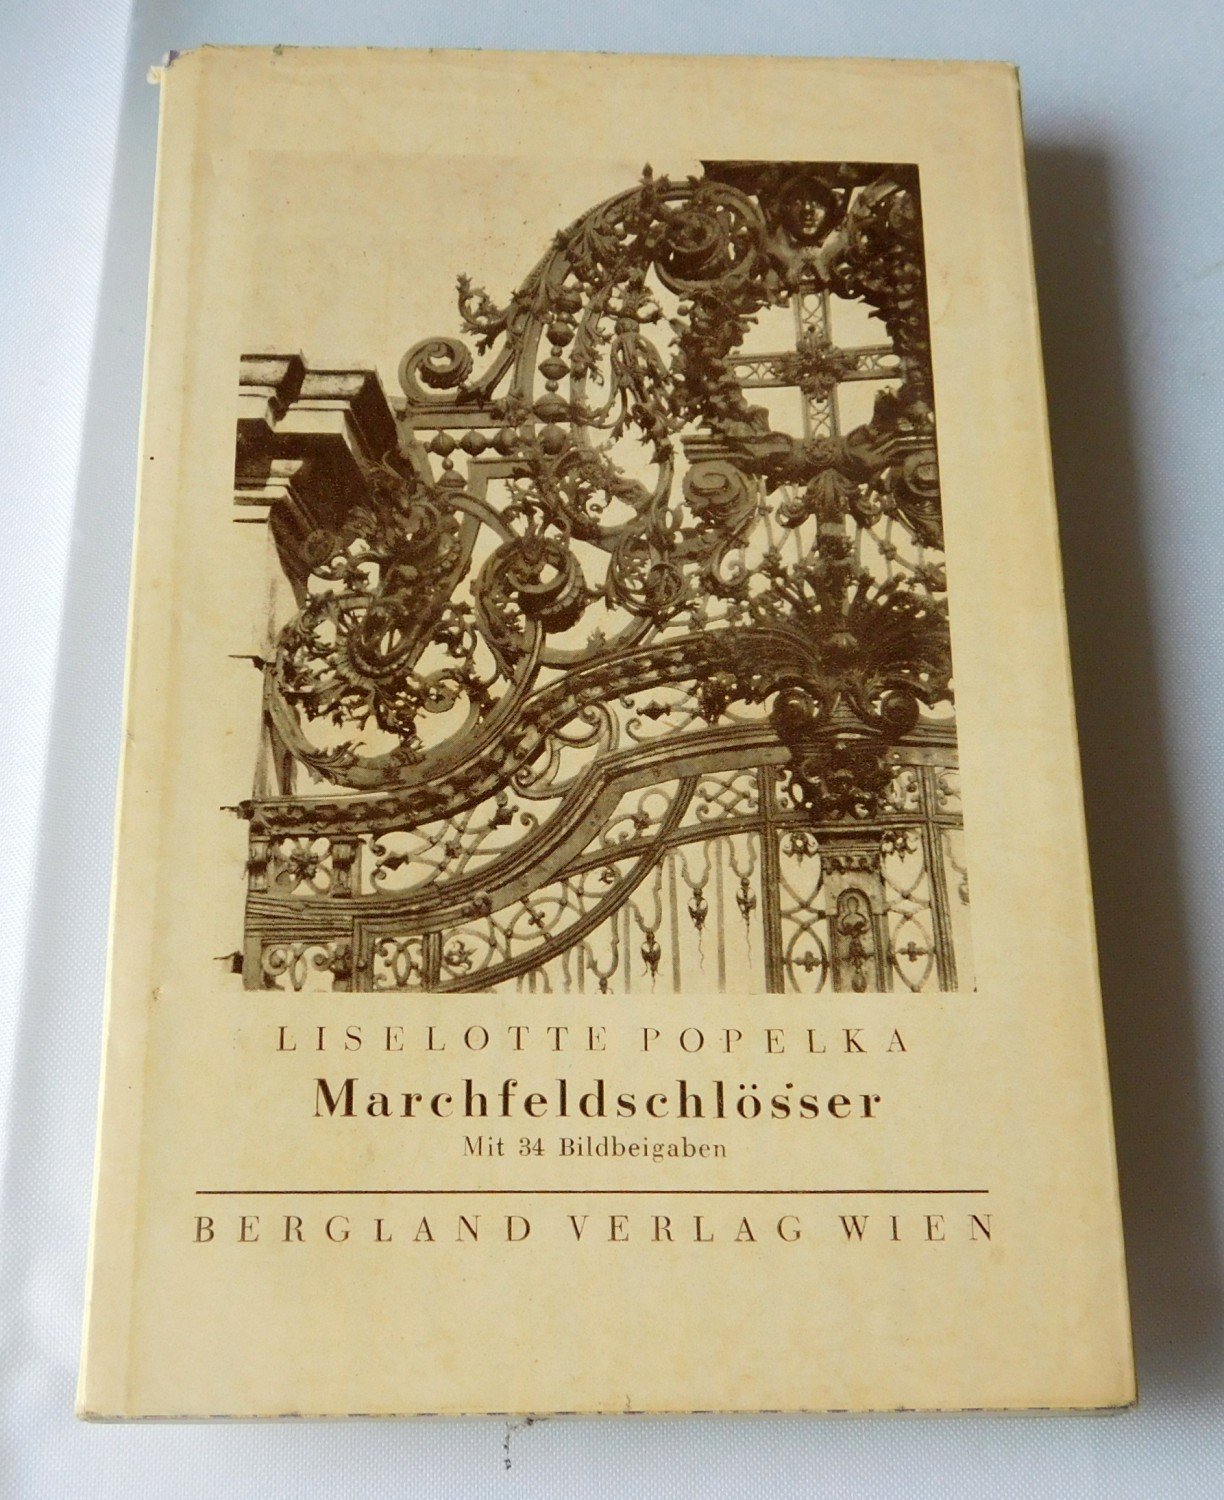 Marchfeldschlosser Liselotte Popelka Buch Antiquarisch Kaufen A02ik44201zzz